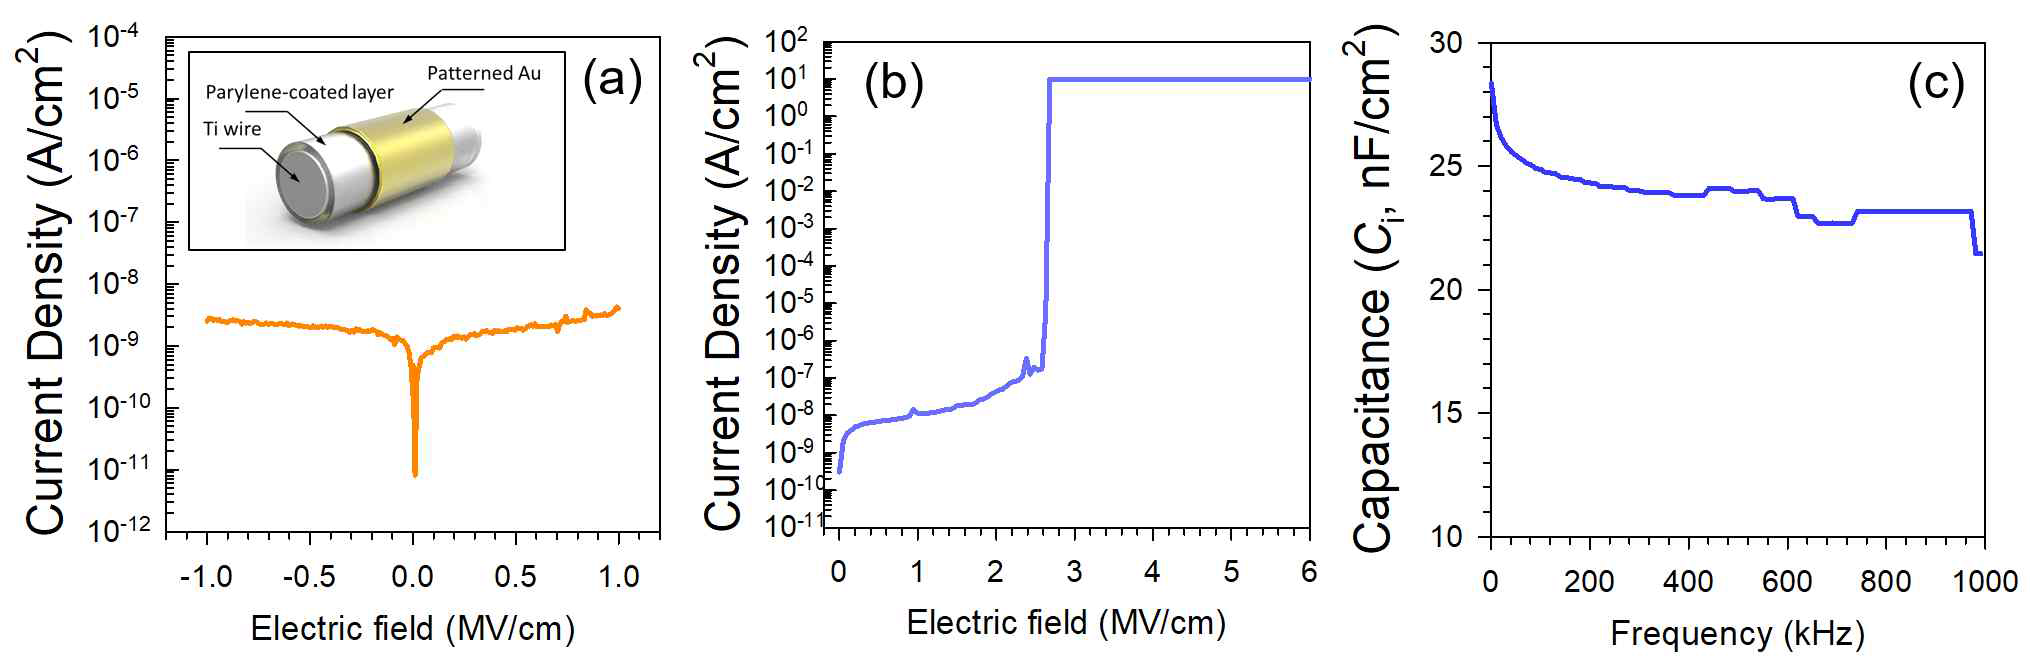 Ti 와이어에 코팅된 파릴렌층의 전기적 특성: (a, b) 전기장 변화에따른 전류 밀도, (c) 주파수 변화에 따른 정전용량